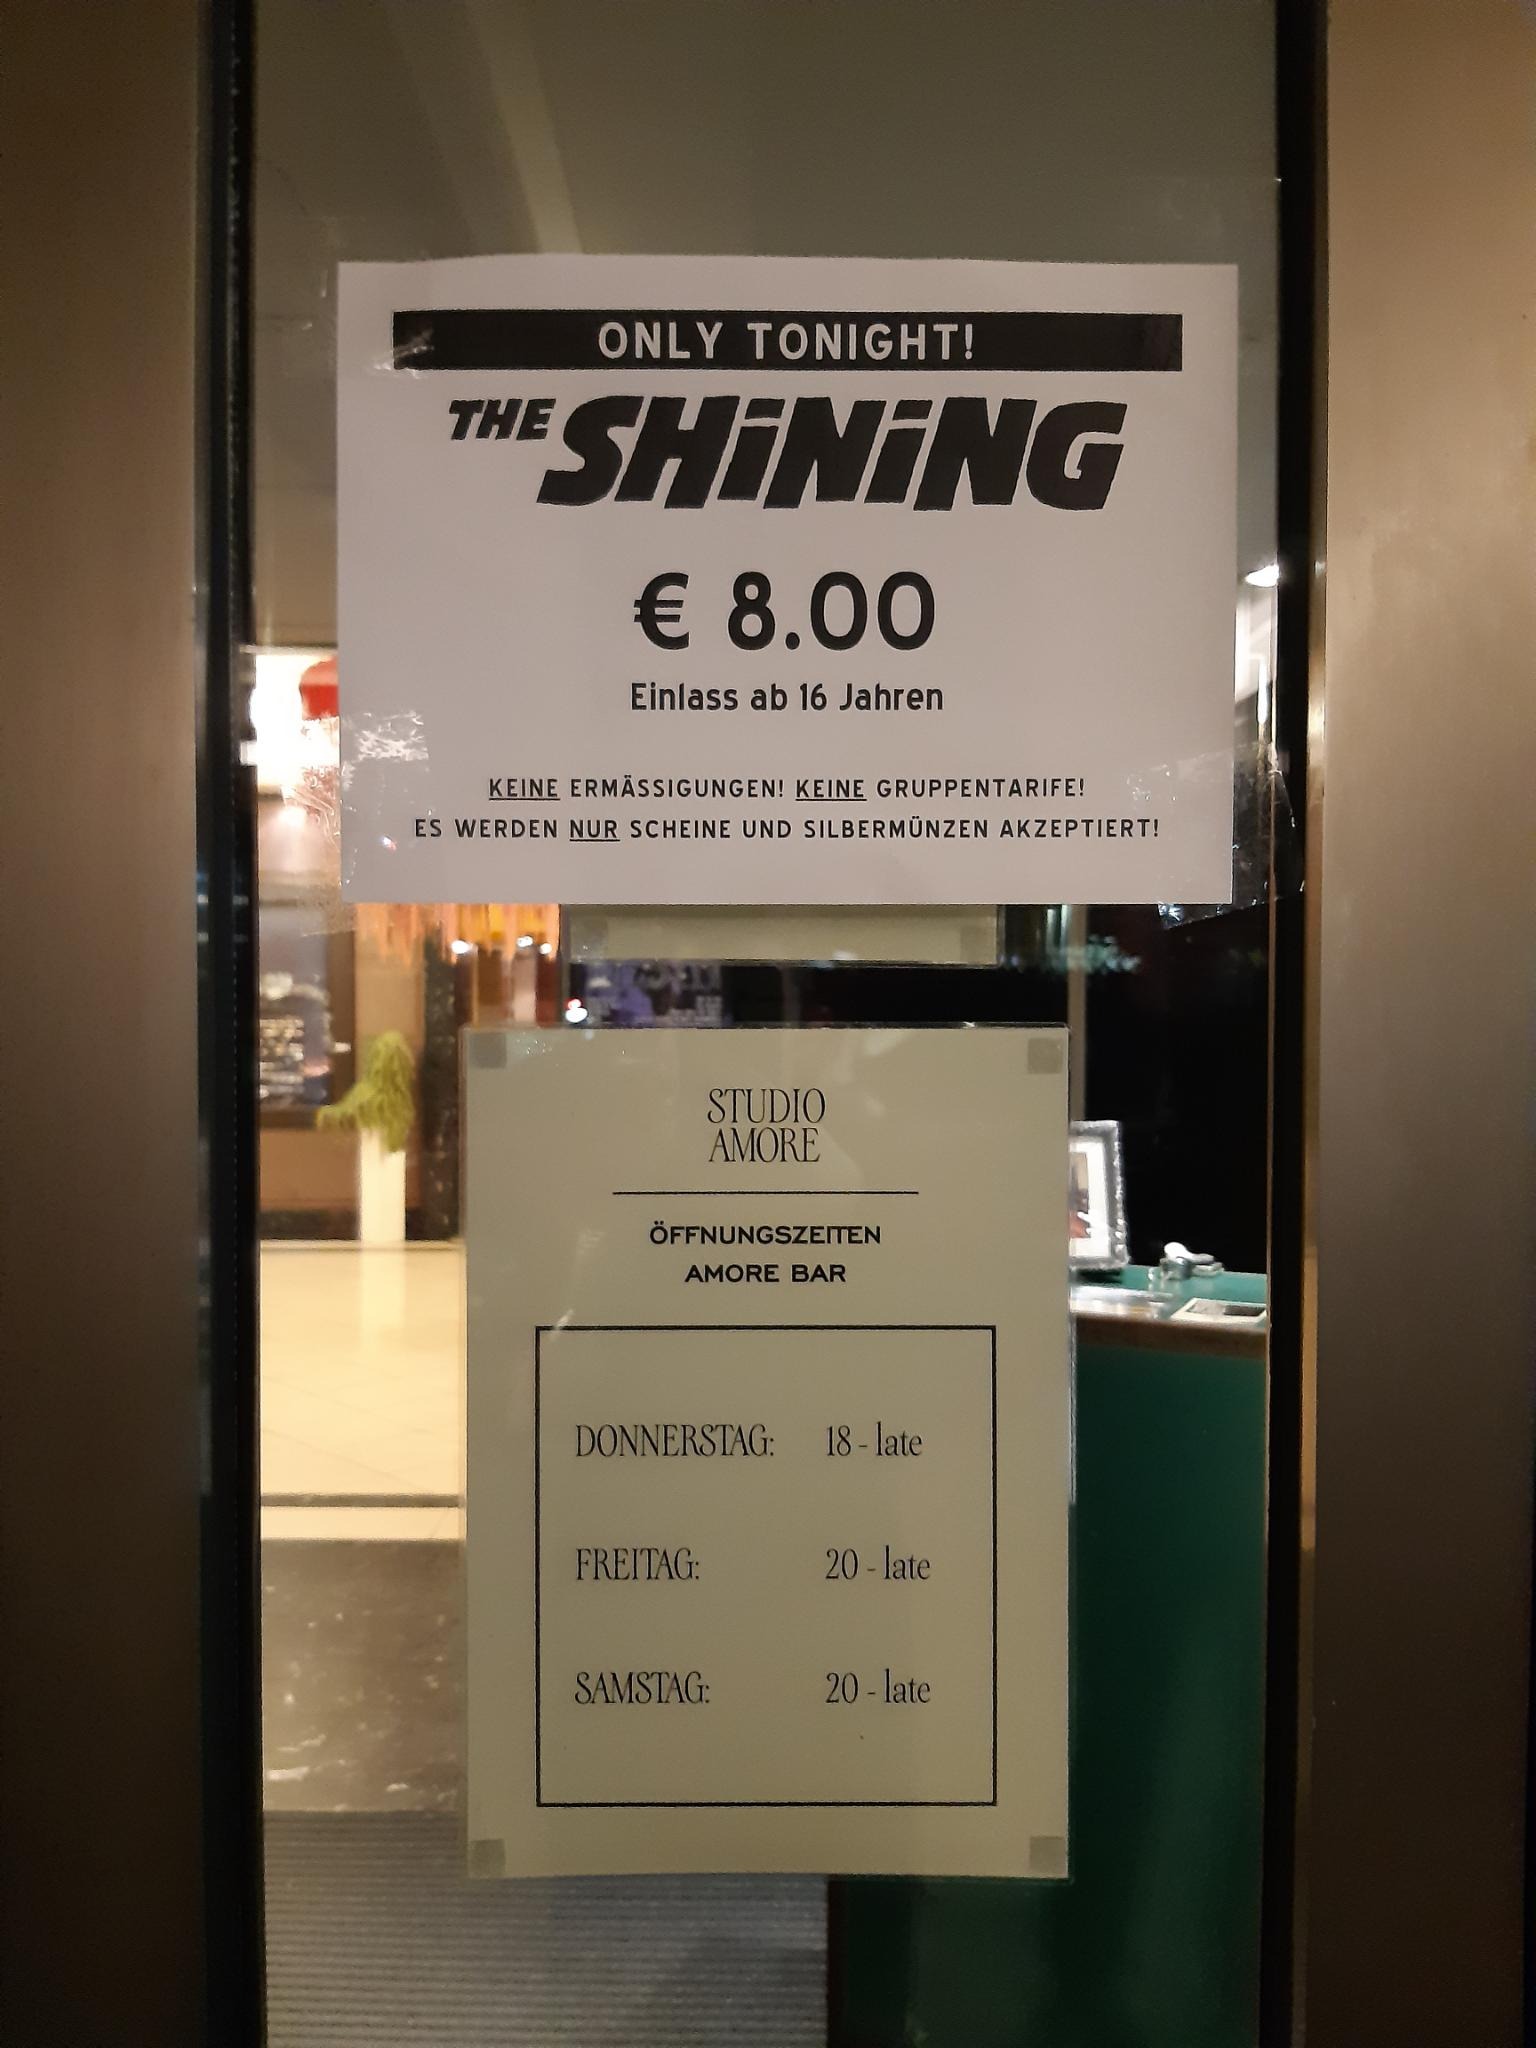 The Shining | Filmvorführung im verlassenen Luxushotel | Foto: Marlene Mercy